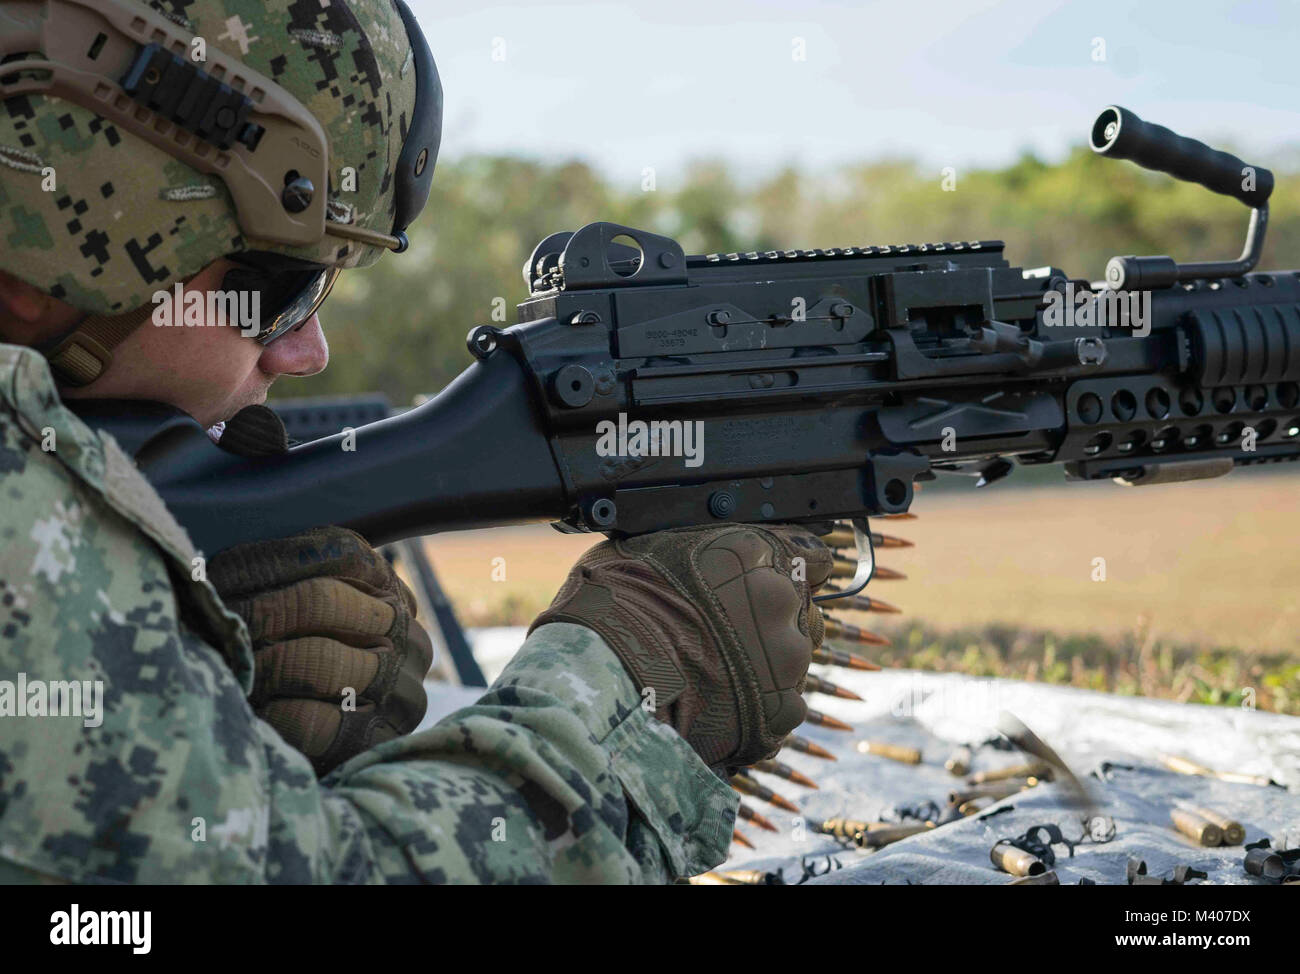 Master-at-Arms 2. Klasse Richard N. Zealy, an die in den Küstenzonen Riverine Group (CRG) 1, Det zugeordnet. Guam, feuert eine M240B Maschinengewehr während einer Live-Fire Training am Marinestützpunkt Guam, Feb 7, 2018. Diese vierteljährliche Readiness Training, von der CRG-1 Ausbildungs- und Auswerteeinheit, San Diego gehalten, ermöglicht CRG-1 Det. Guam 360-Punkt Verteidigung, laufende und in-Port an Bord benannten hohen Wert. CRG-1 Det. Guam ist zum Kommandanten, Task Force 75, die primäre Expeditionary task force verantwortlich für die Planung und Ausführung der Küstengebiete Riverine operations, explosive ordnance dispos zugeordnet Stockfoto